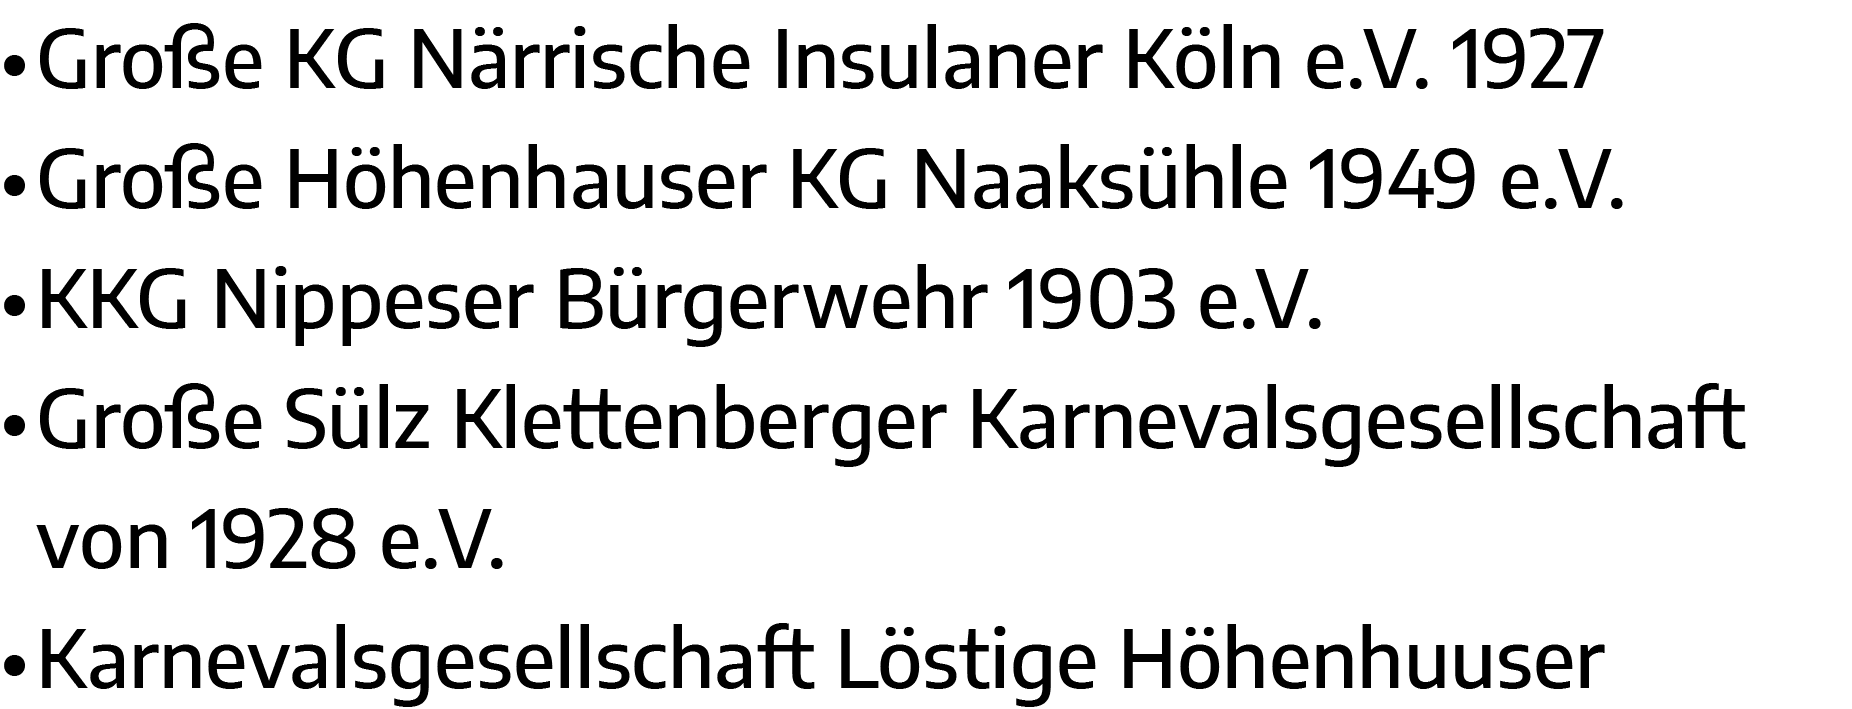   Große KG Närrische Insulaner Köln e V  1927   Große Höhenhauser KG Naaksühle 1949 e V    KKG Nippeser Bürgerwehr 19   